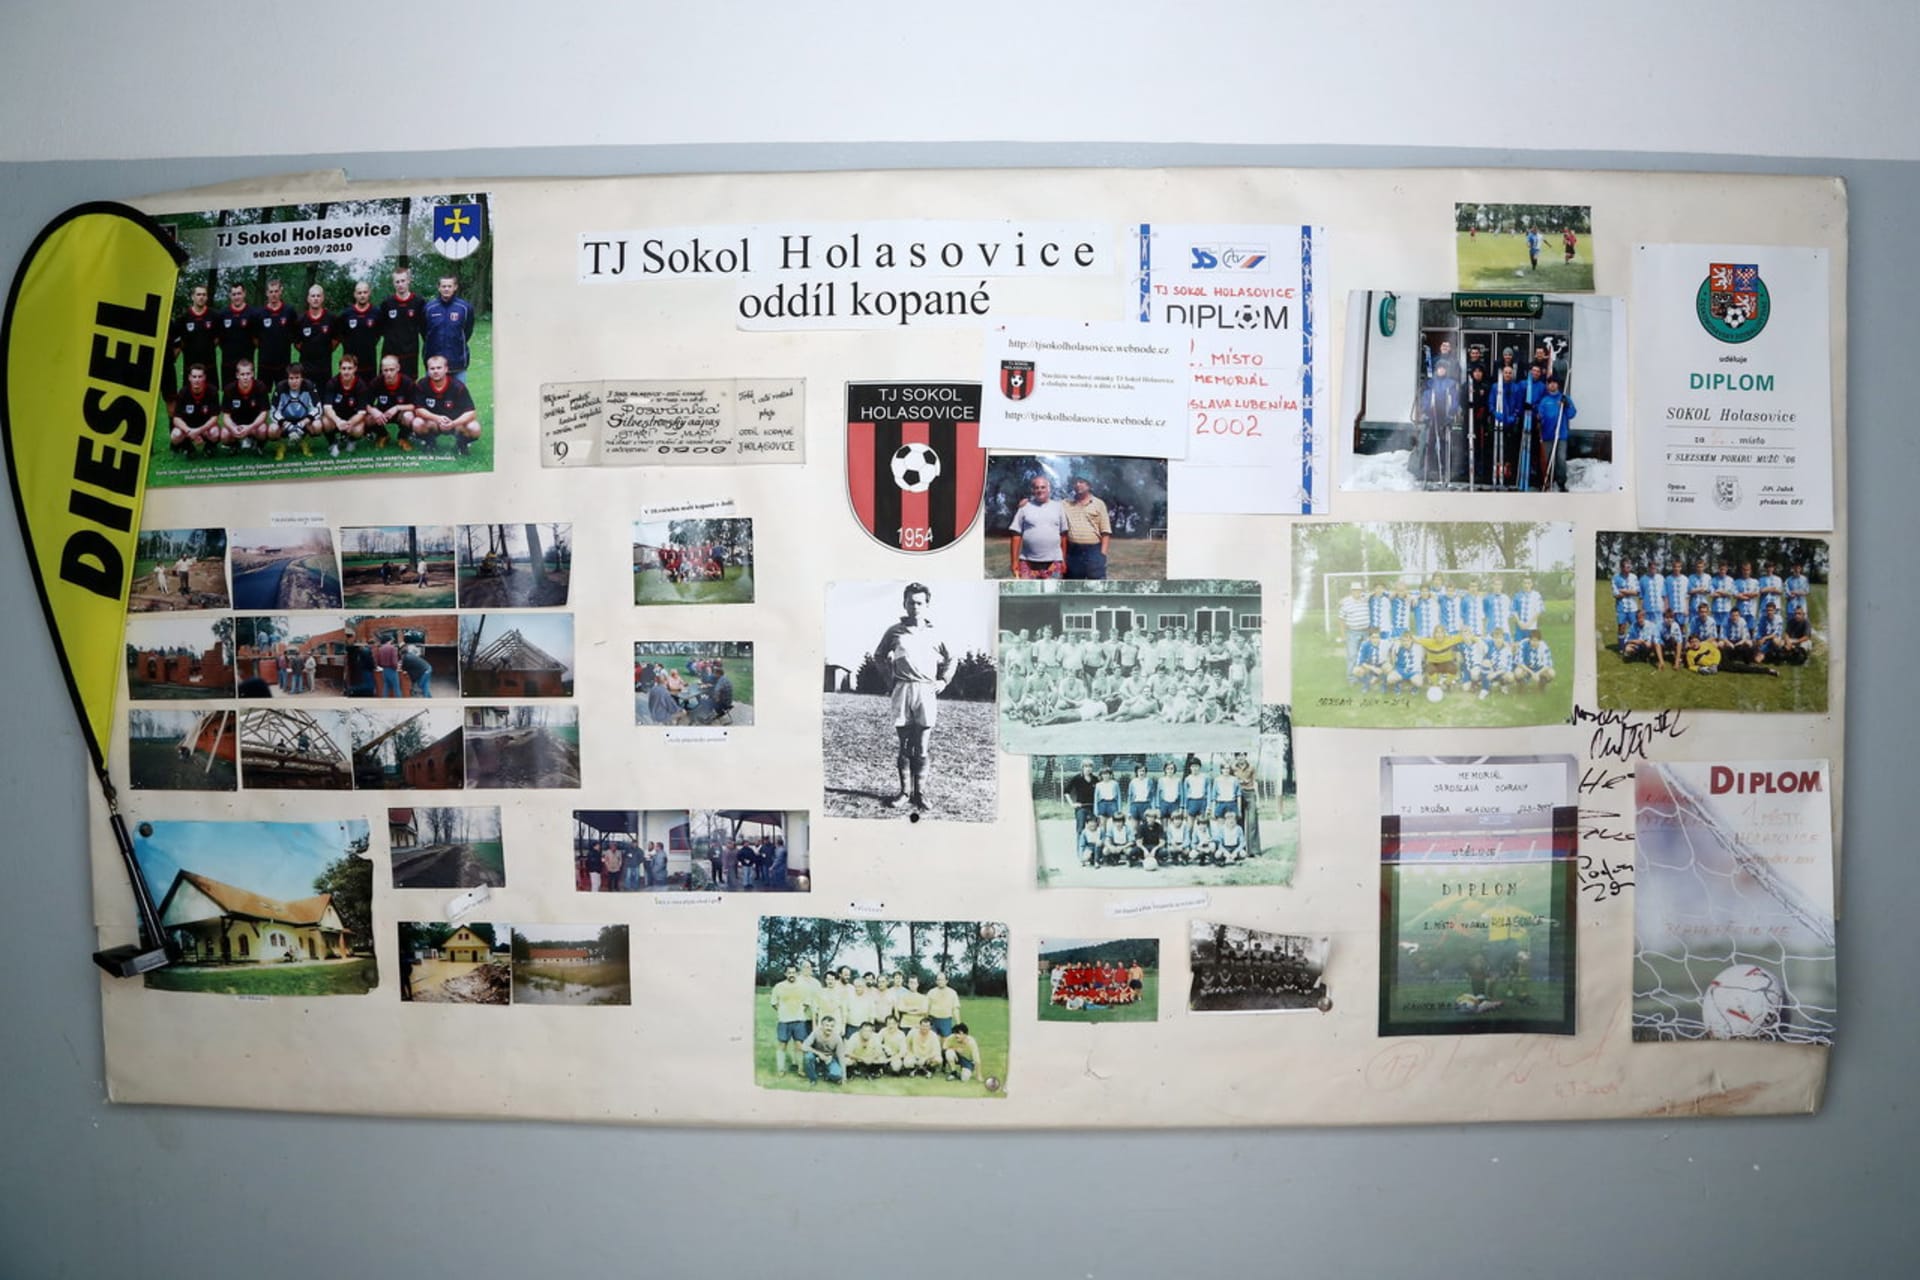 V Holasovicích mají dlouhou fotbalovou tradici a dokonce i ženský fotbalový tým, a tudíž fotbalem žije opravdu celá vesnice.